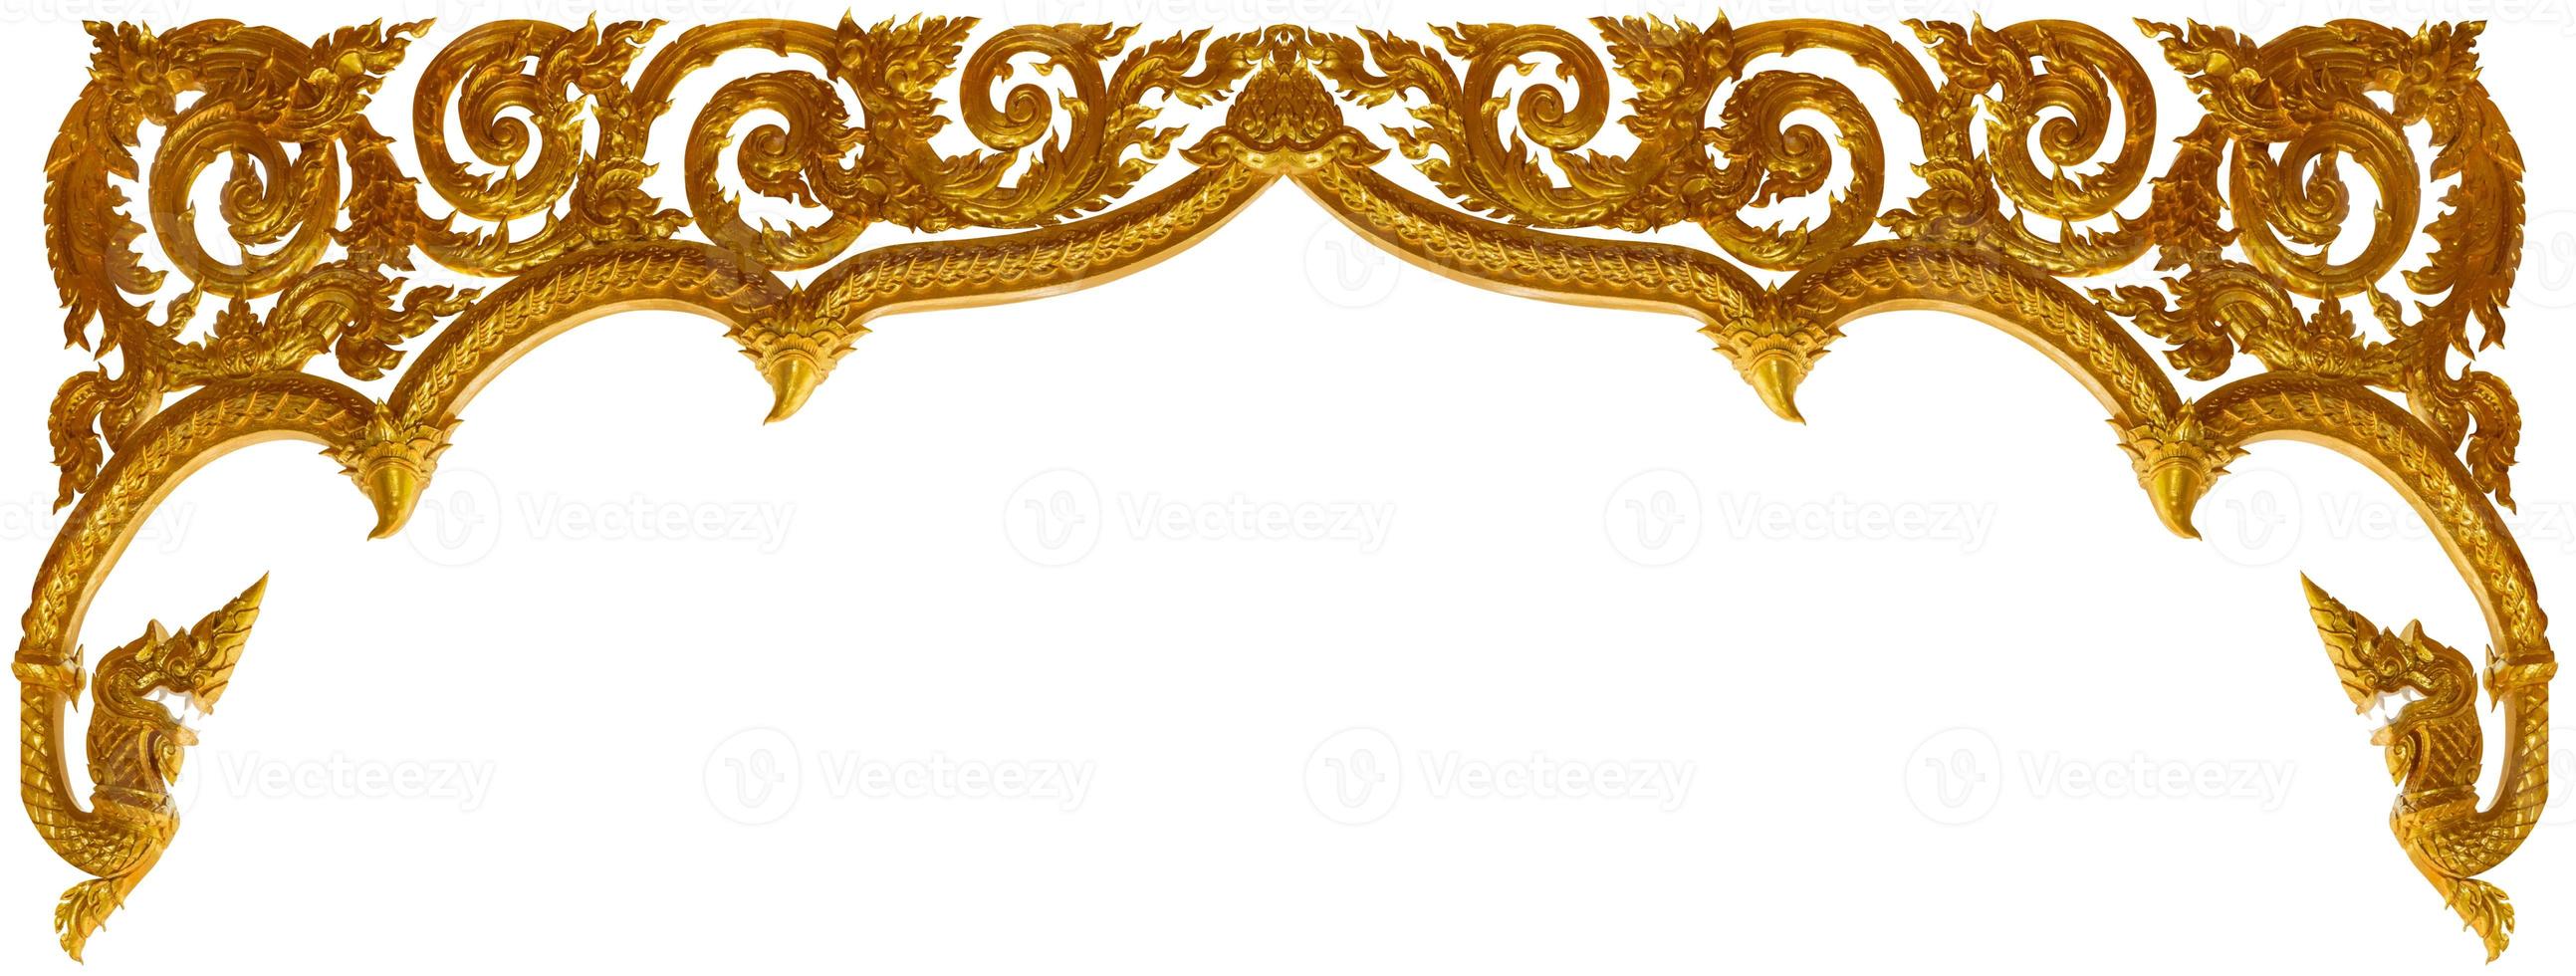 arte de moldura de ornamento esculpida em ouro isolada no fundo branco foto